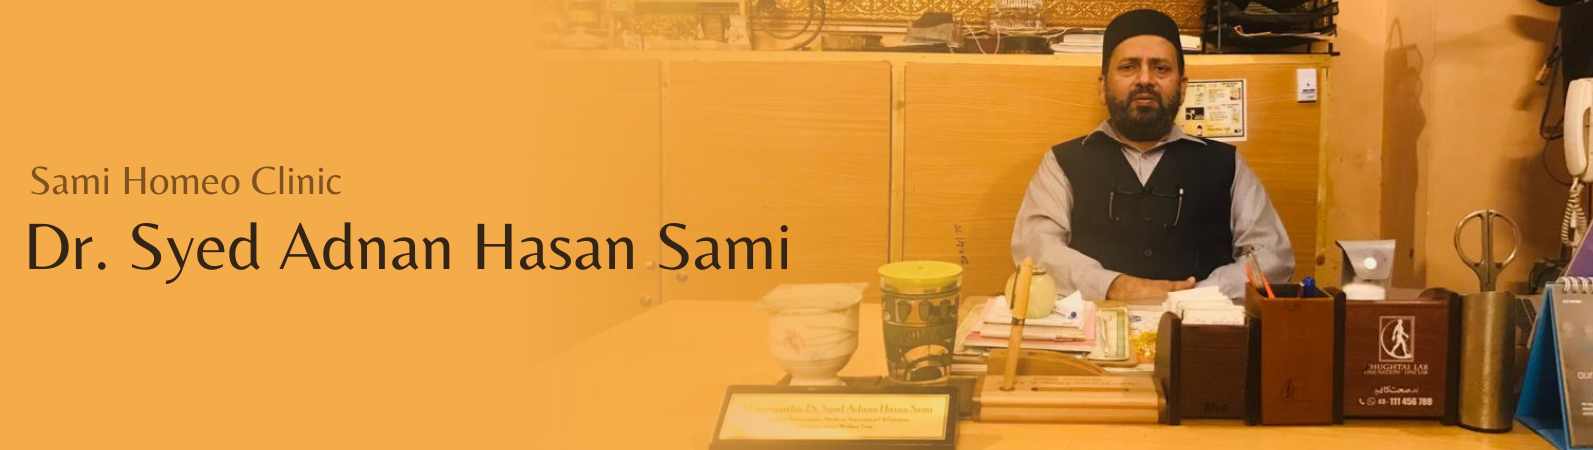 Sami Homeo Clinic